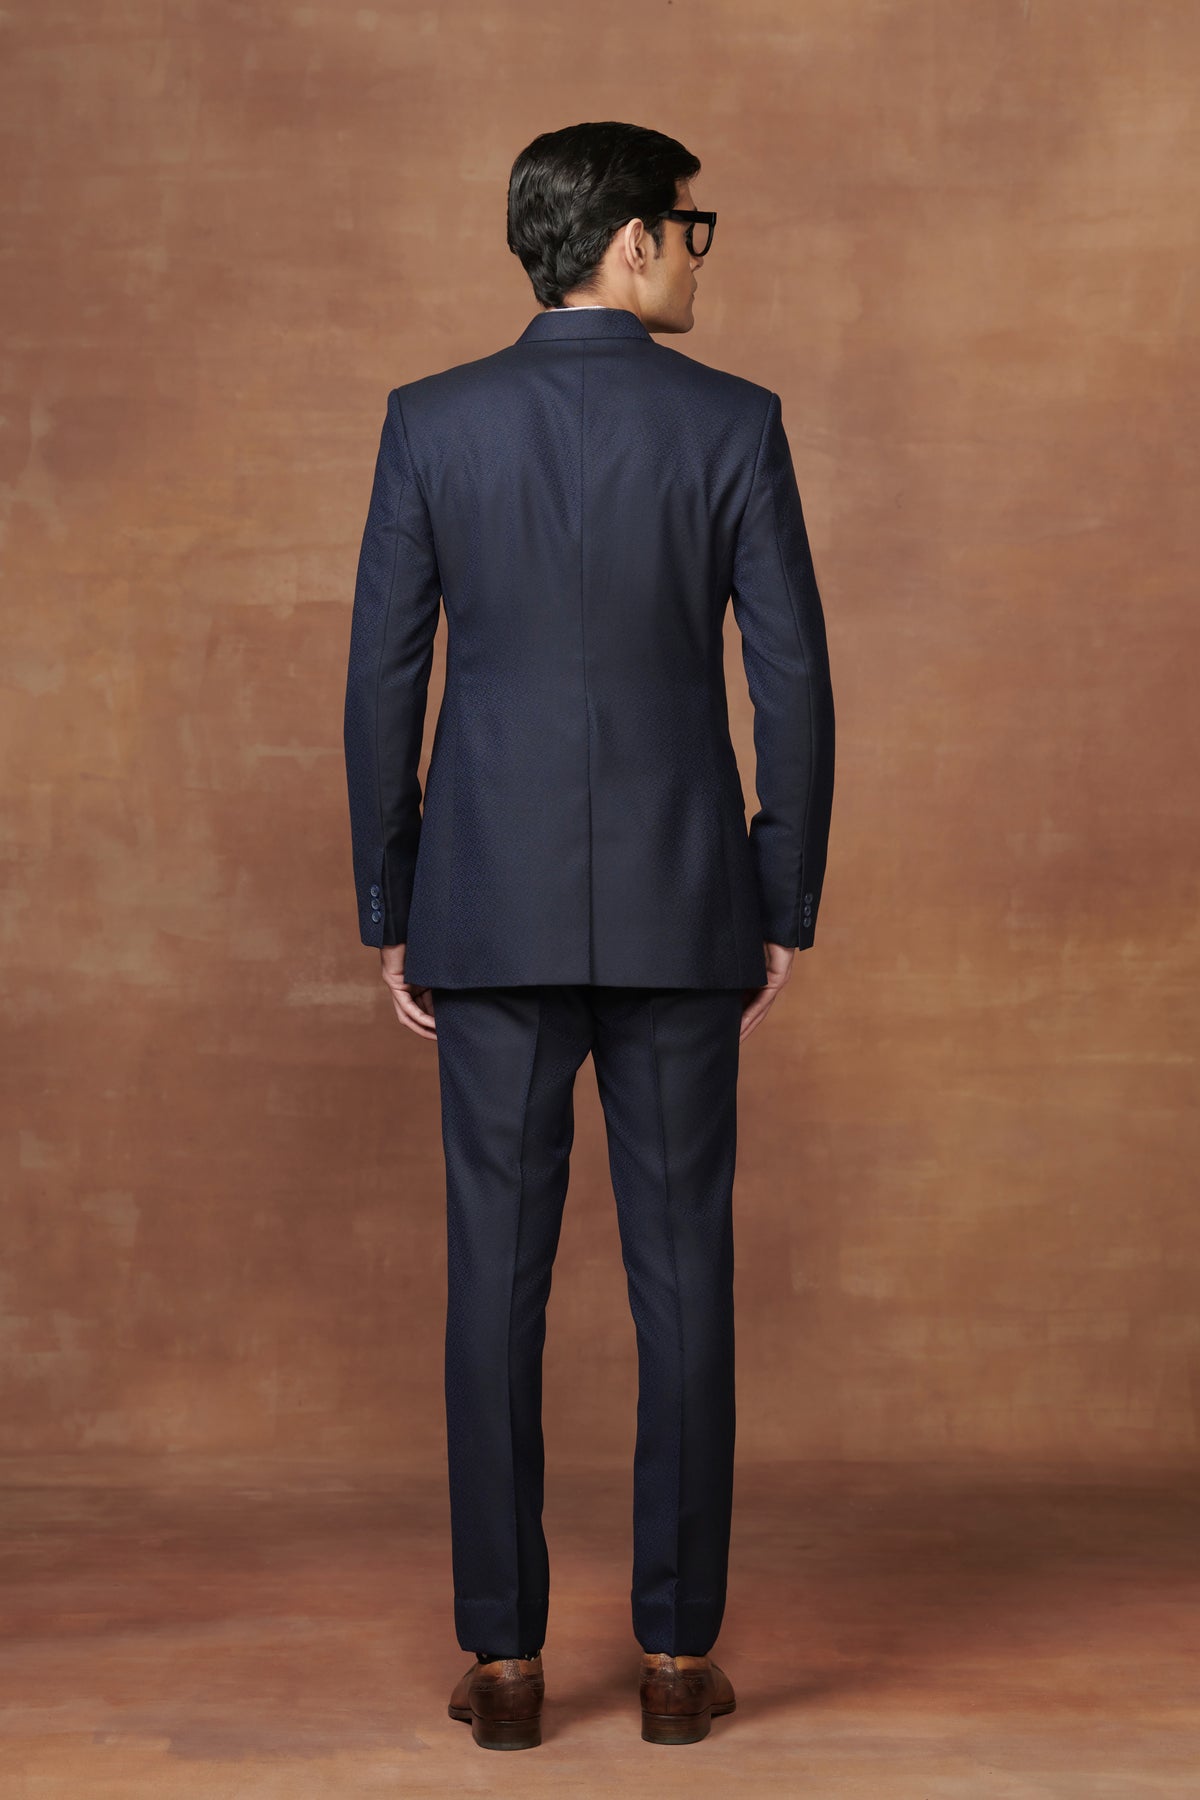 Bespoke Black Bandhgala Suit